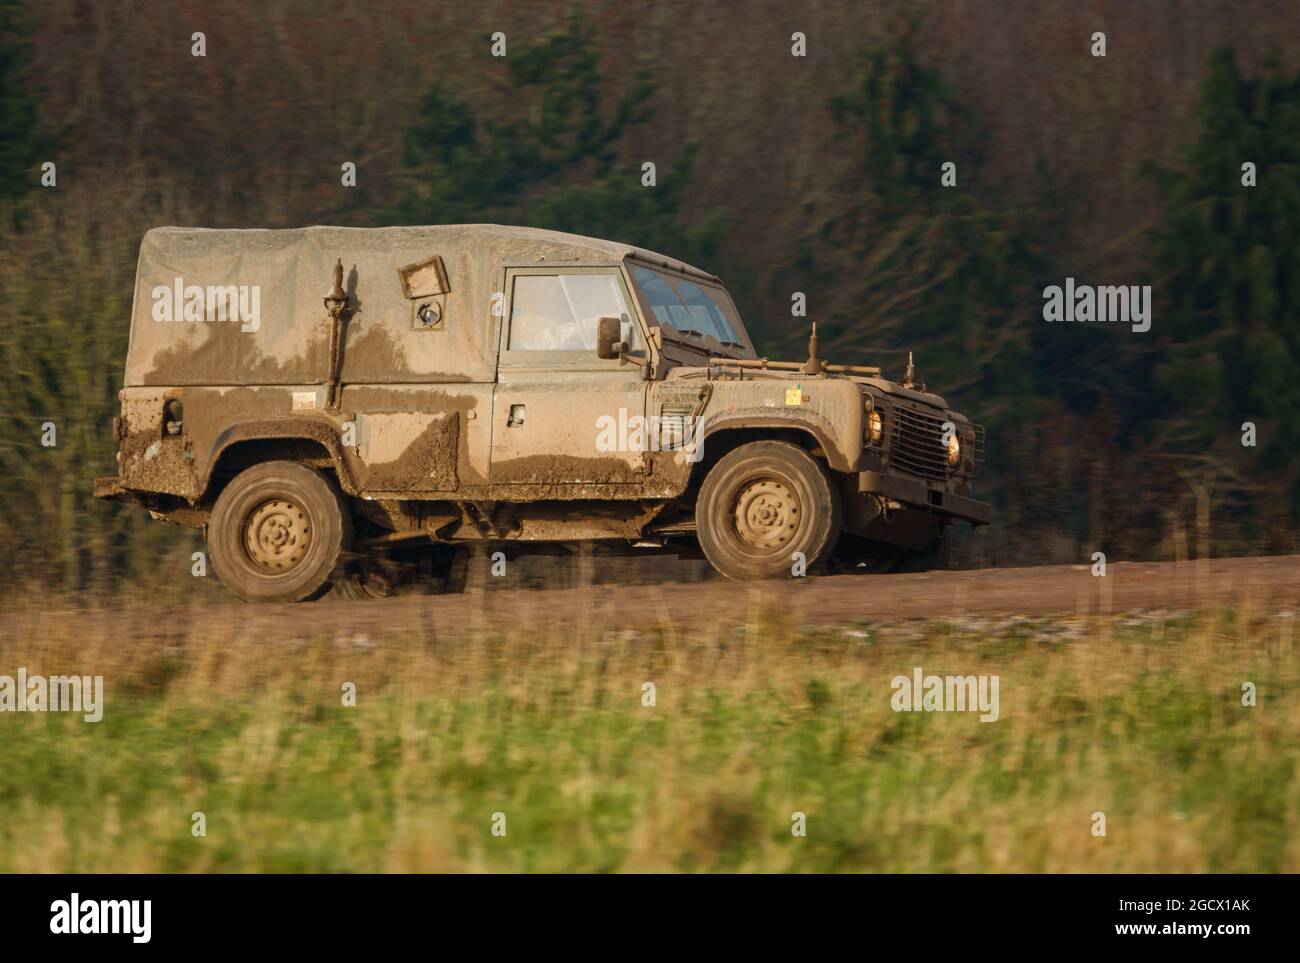 British Army Land Rover Defender light utility vehicle on exercise Salisbury Plain, Wiltshire, UK Stock Photo